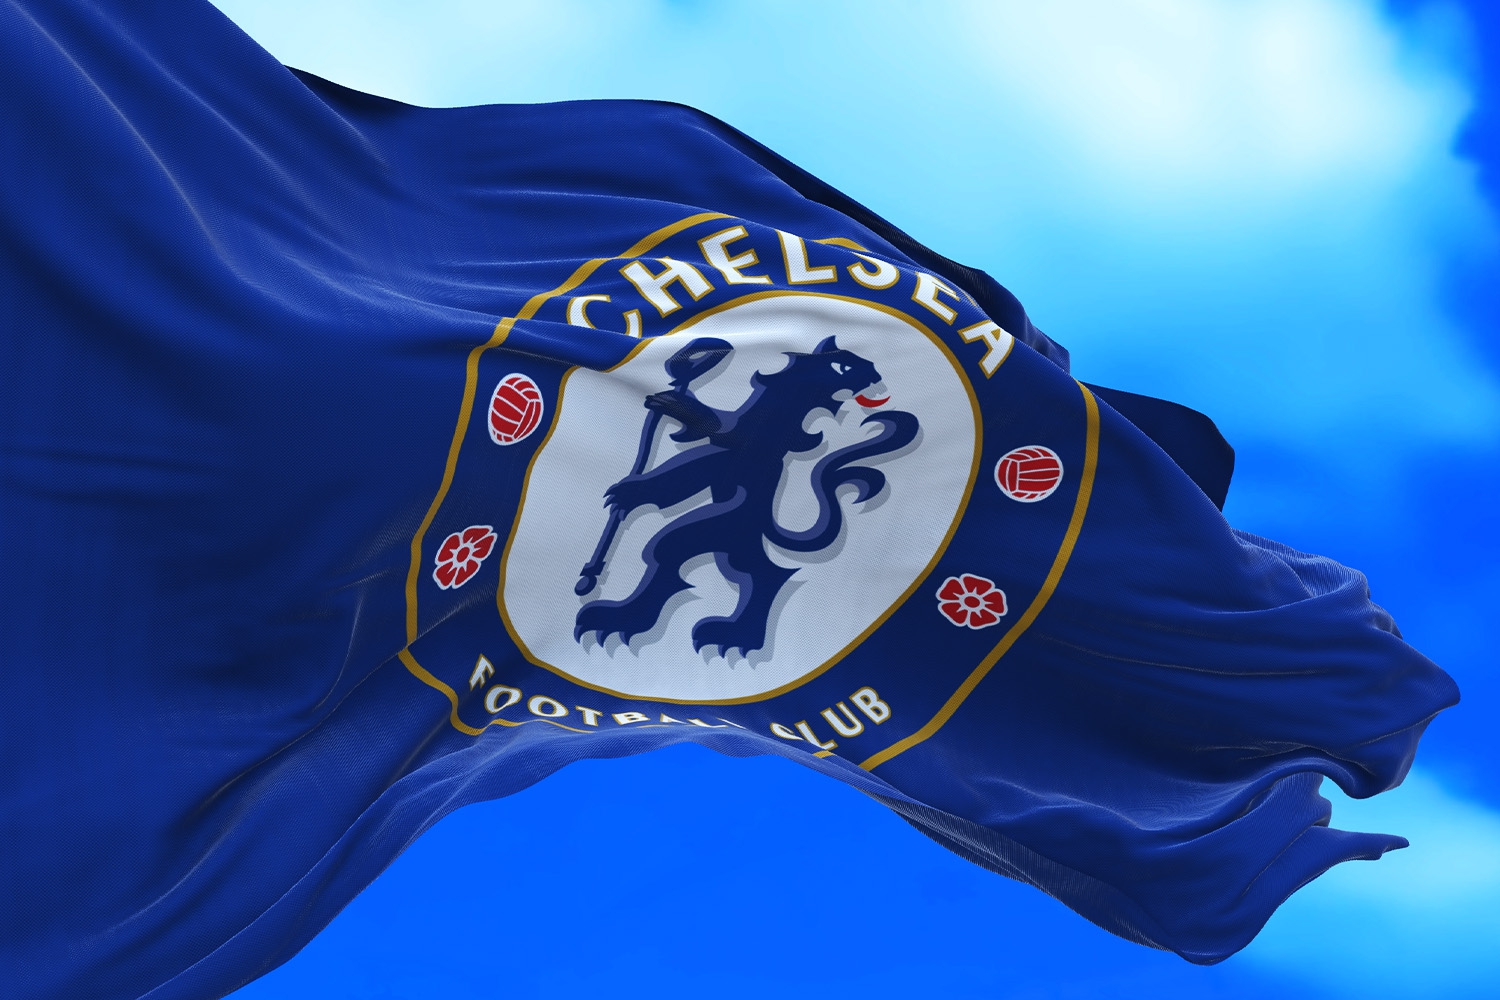 Chelsea dopina wolny transfer skrzydłowego